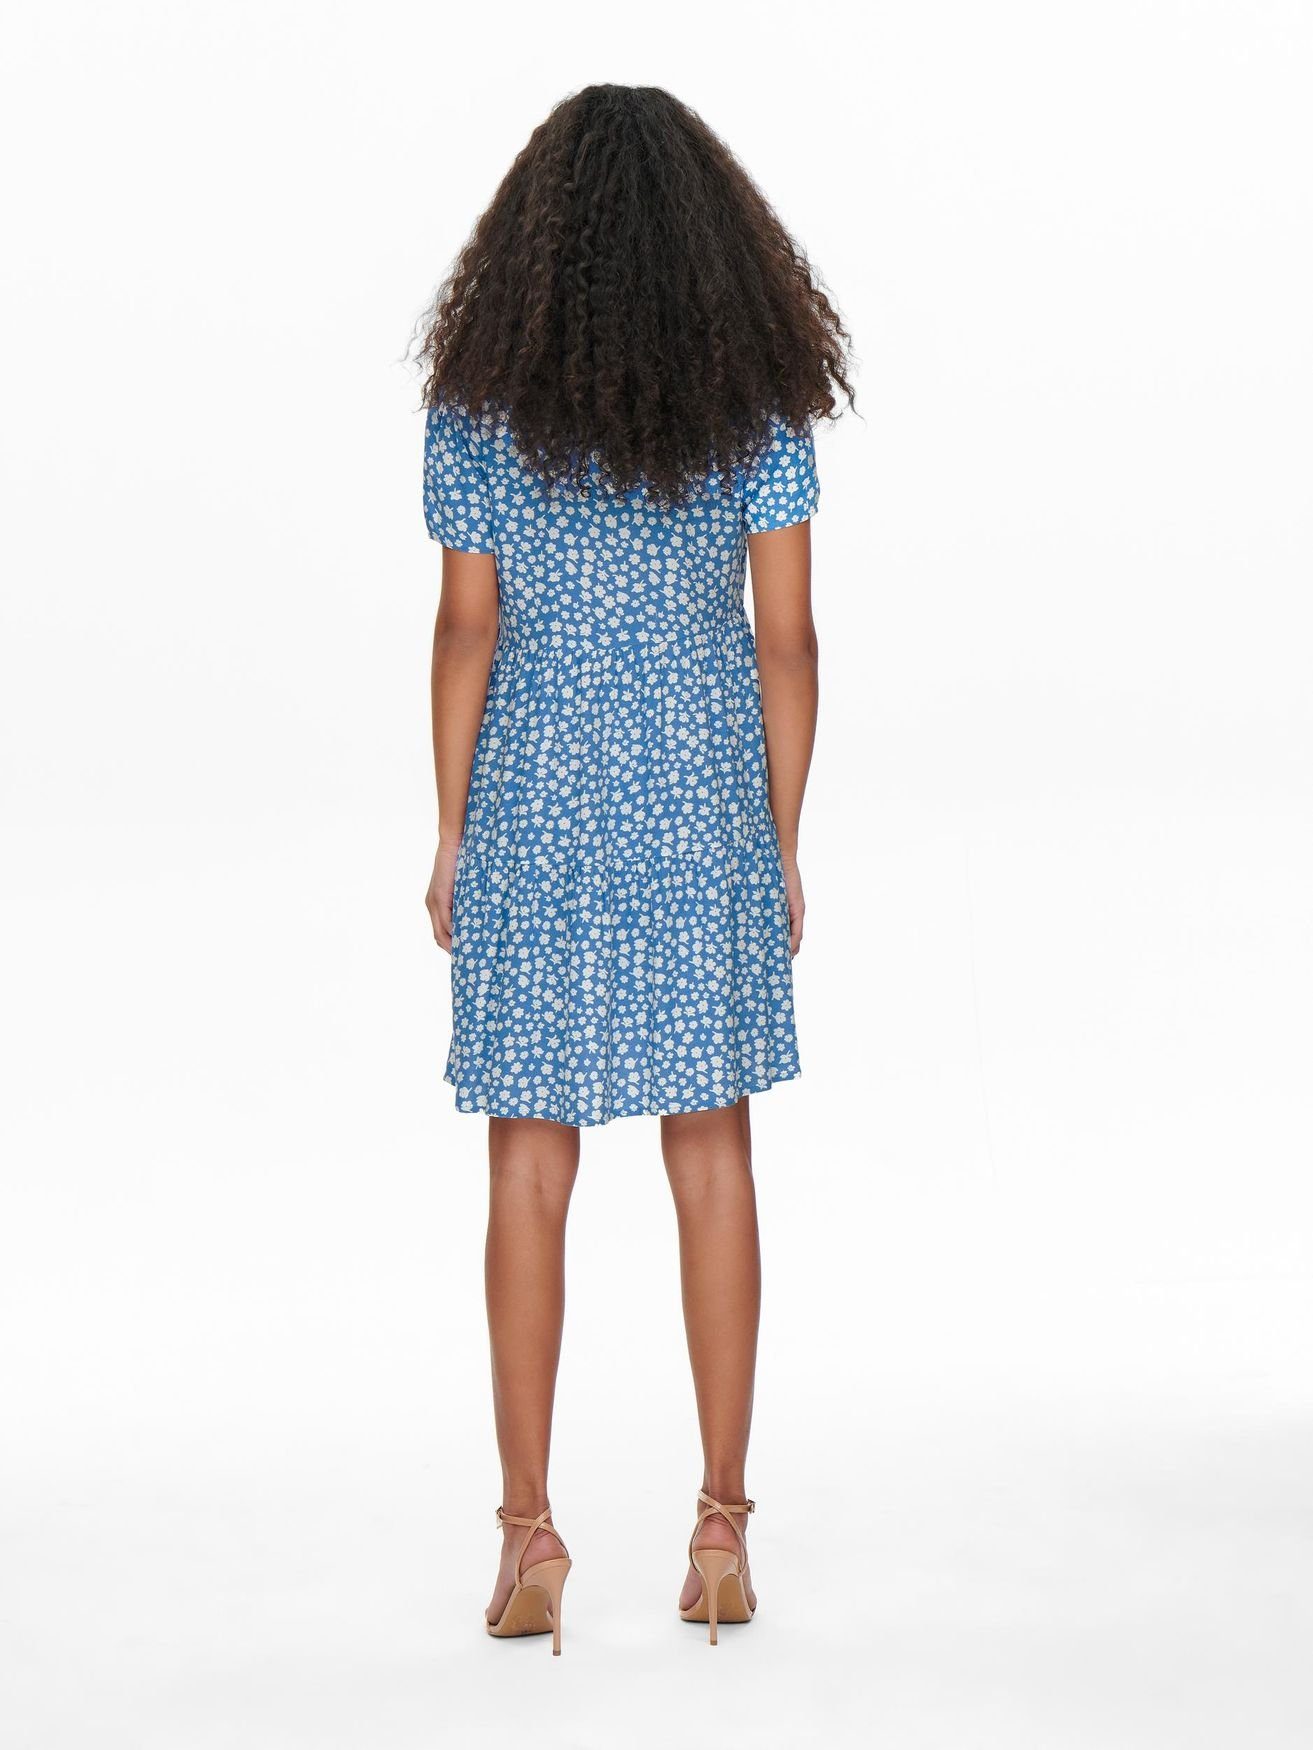 ONLZALLY V-Ausschnitt Kleid (knielang) Blusen 4928 Blau in ONLY Kurzes Shirtkleid